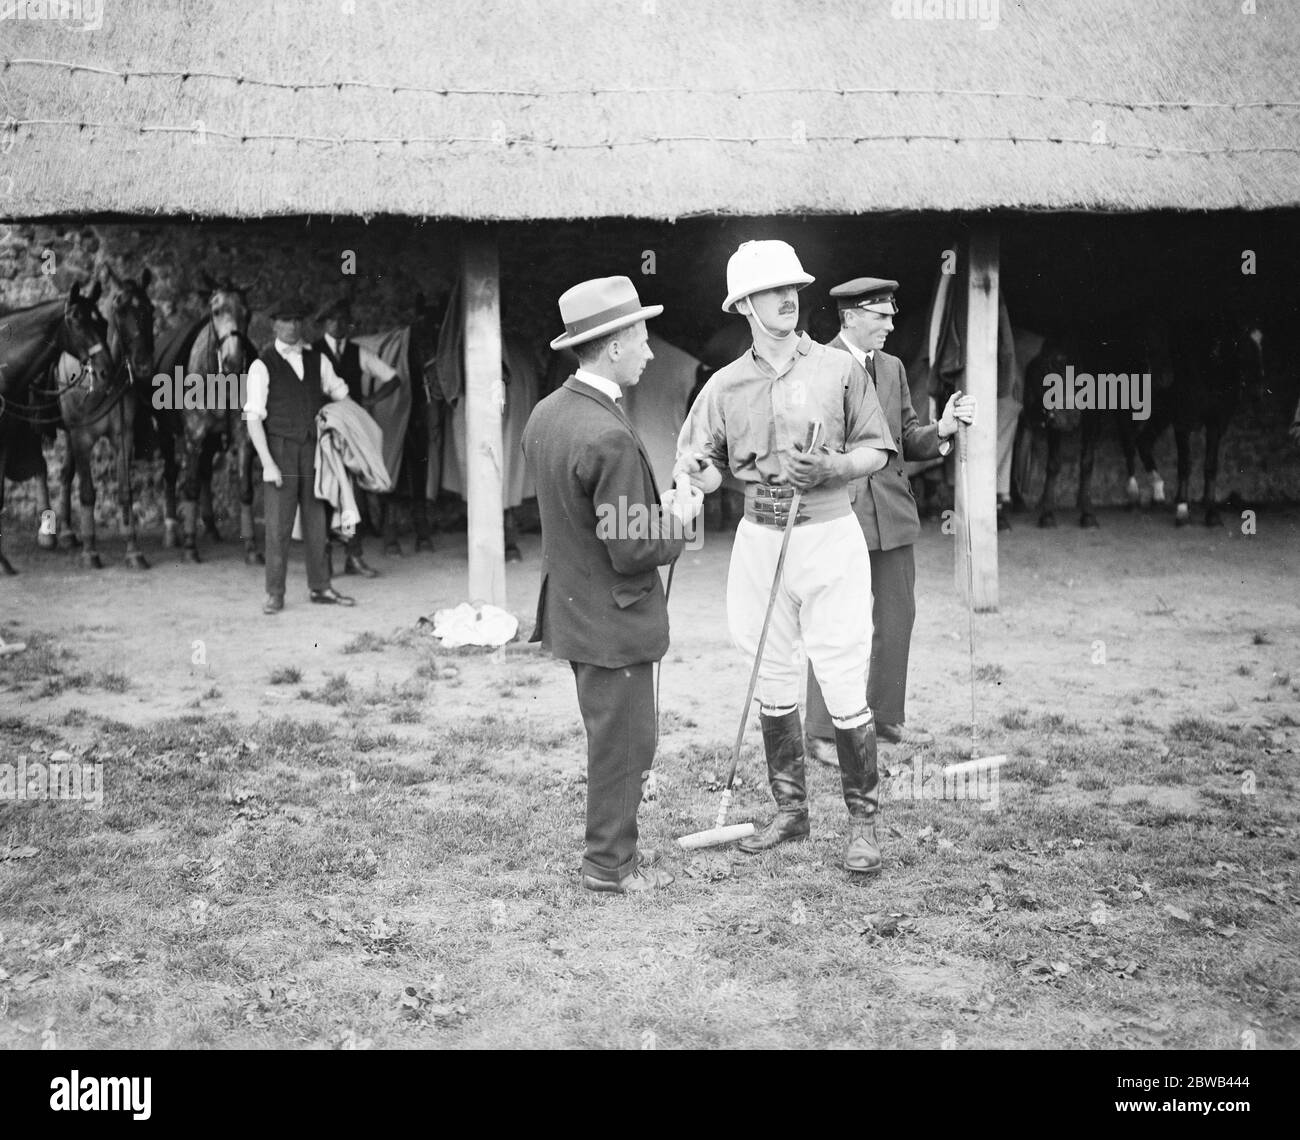 Goodwood Week Polo inizia a Cowdray Park, West Sussex, Sir e Horlick mettendo resina sulle sue mani prima di un chukka 31 luglio 1923 Foto Stock